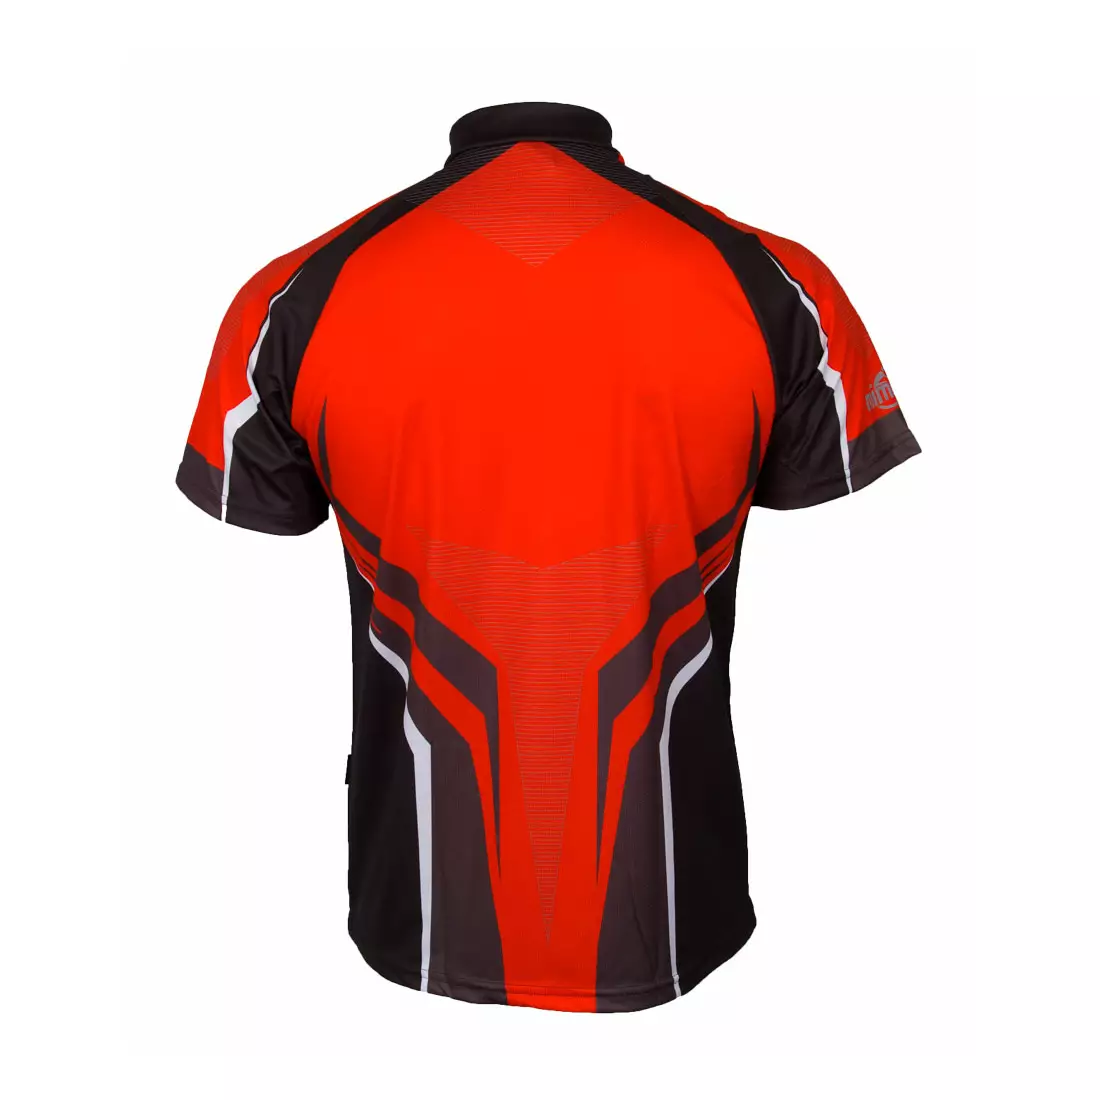 MikeSPORT DESIGN RAVO MTB pánský cyklistický dres, černo-červený